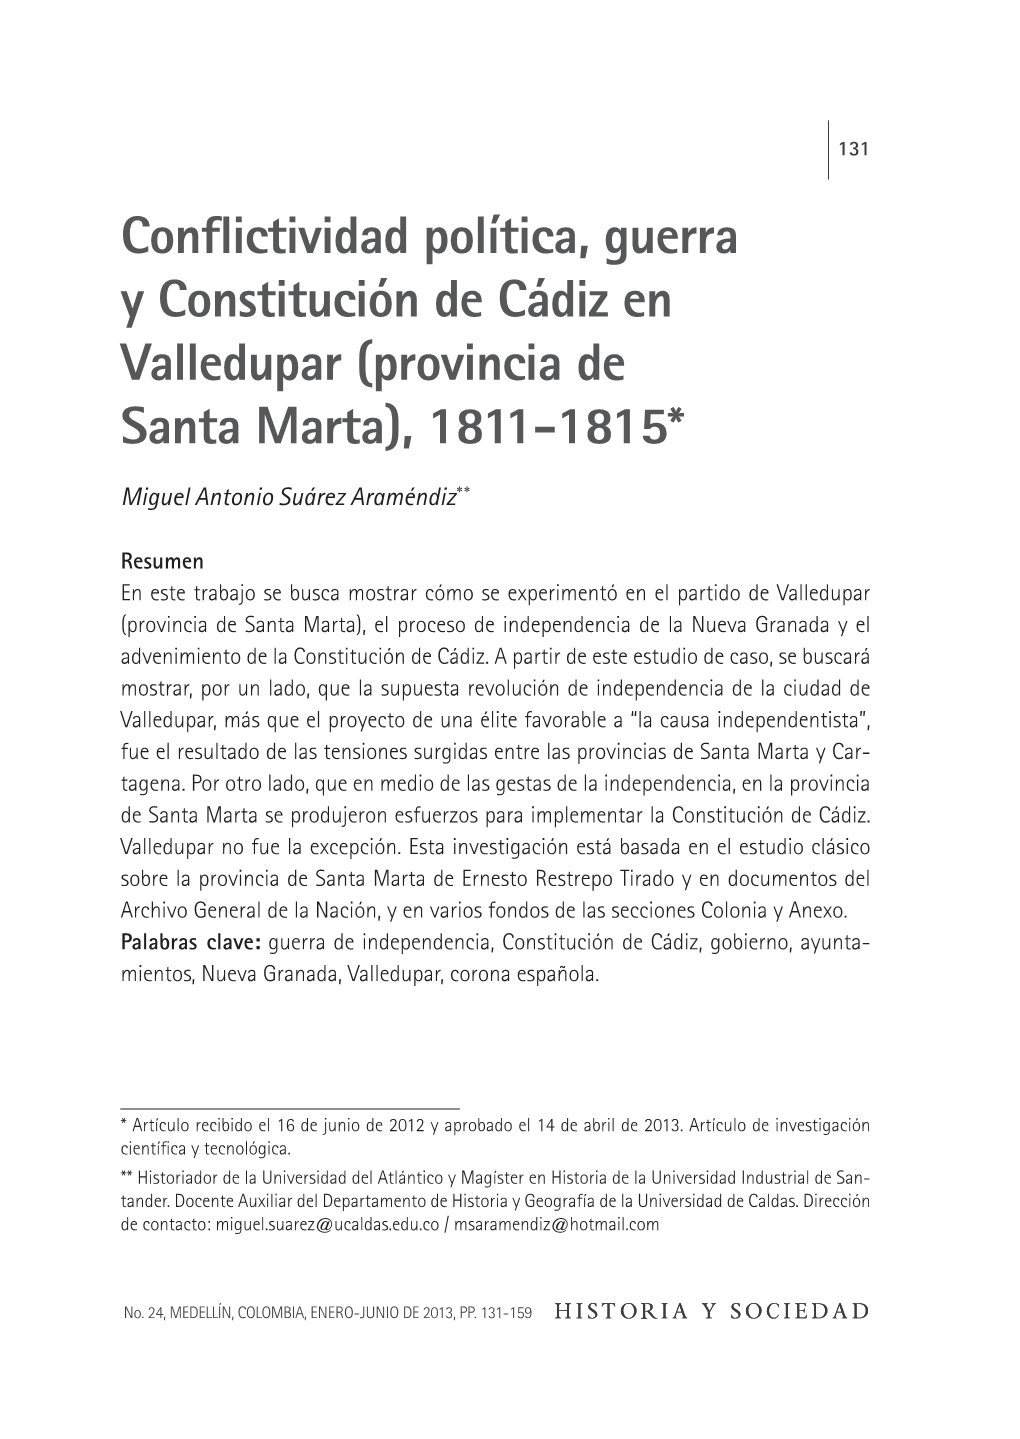 Conflictividad Política, Guerra Y Constitución De Cádiz En Valledupar (Provincia De Santa Marta), 1811-1815*